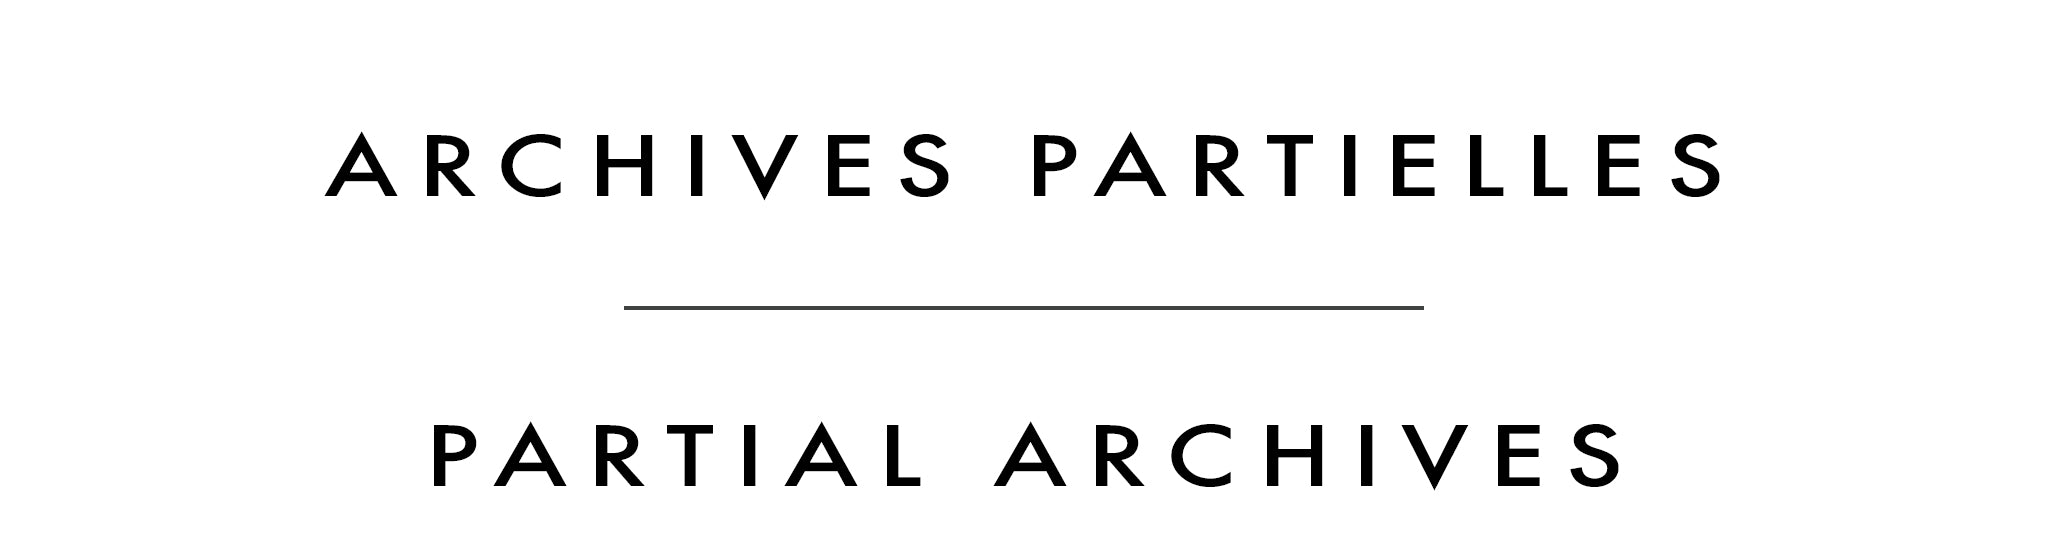 Archives partielles | Partial Archives | J. Douglas Thompson